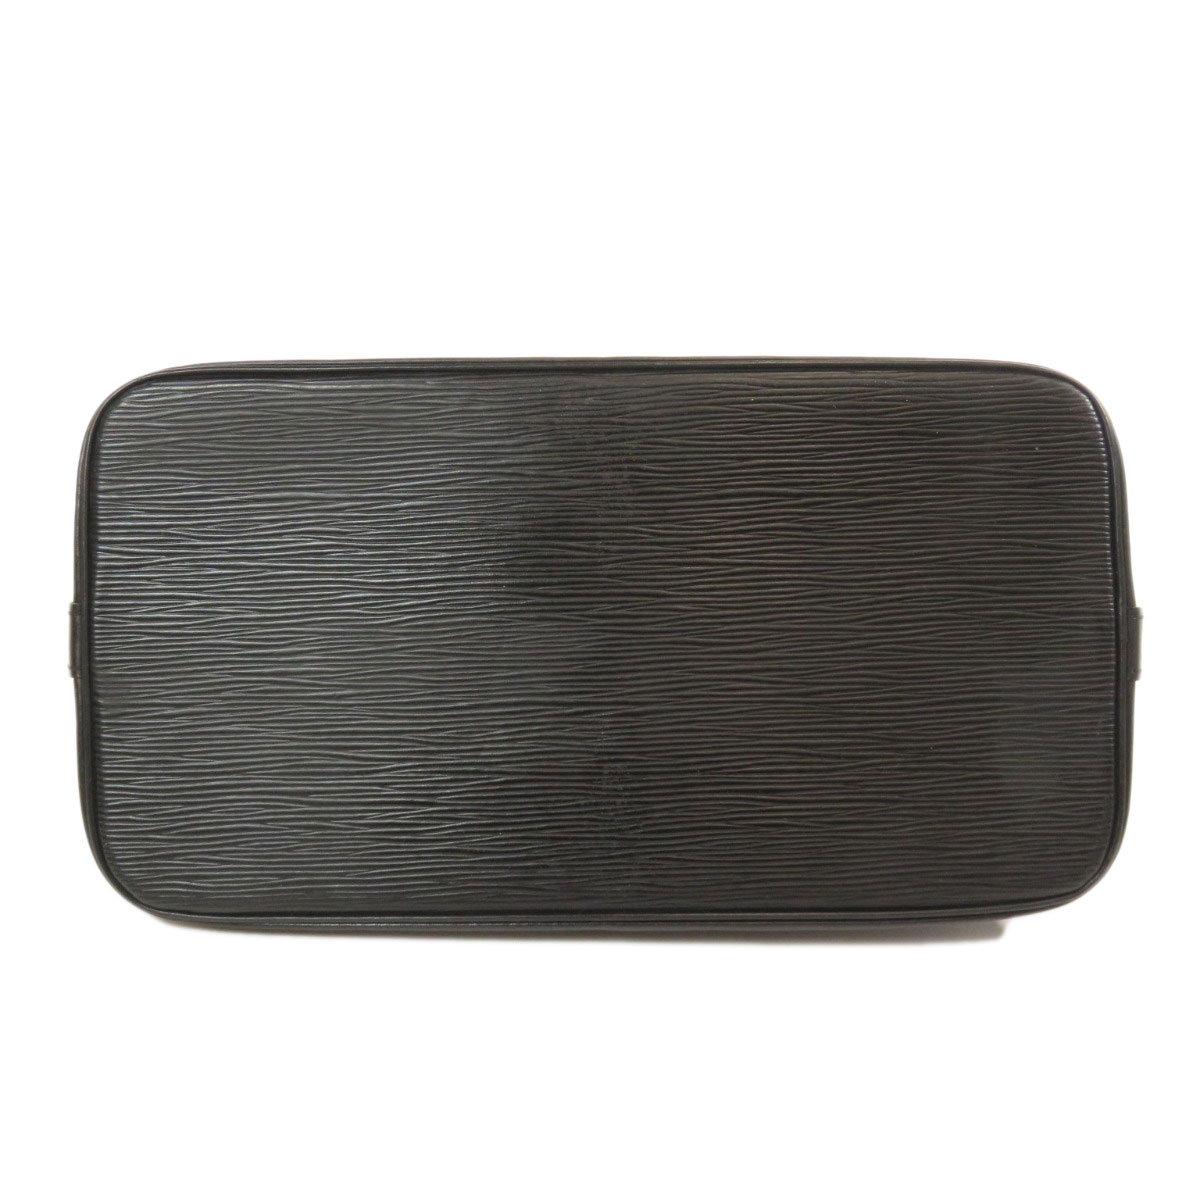 LOUIS VUITTON M52142 Handbag Alma Epi Gold Hardware Epi Leather | eBay